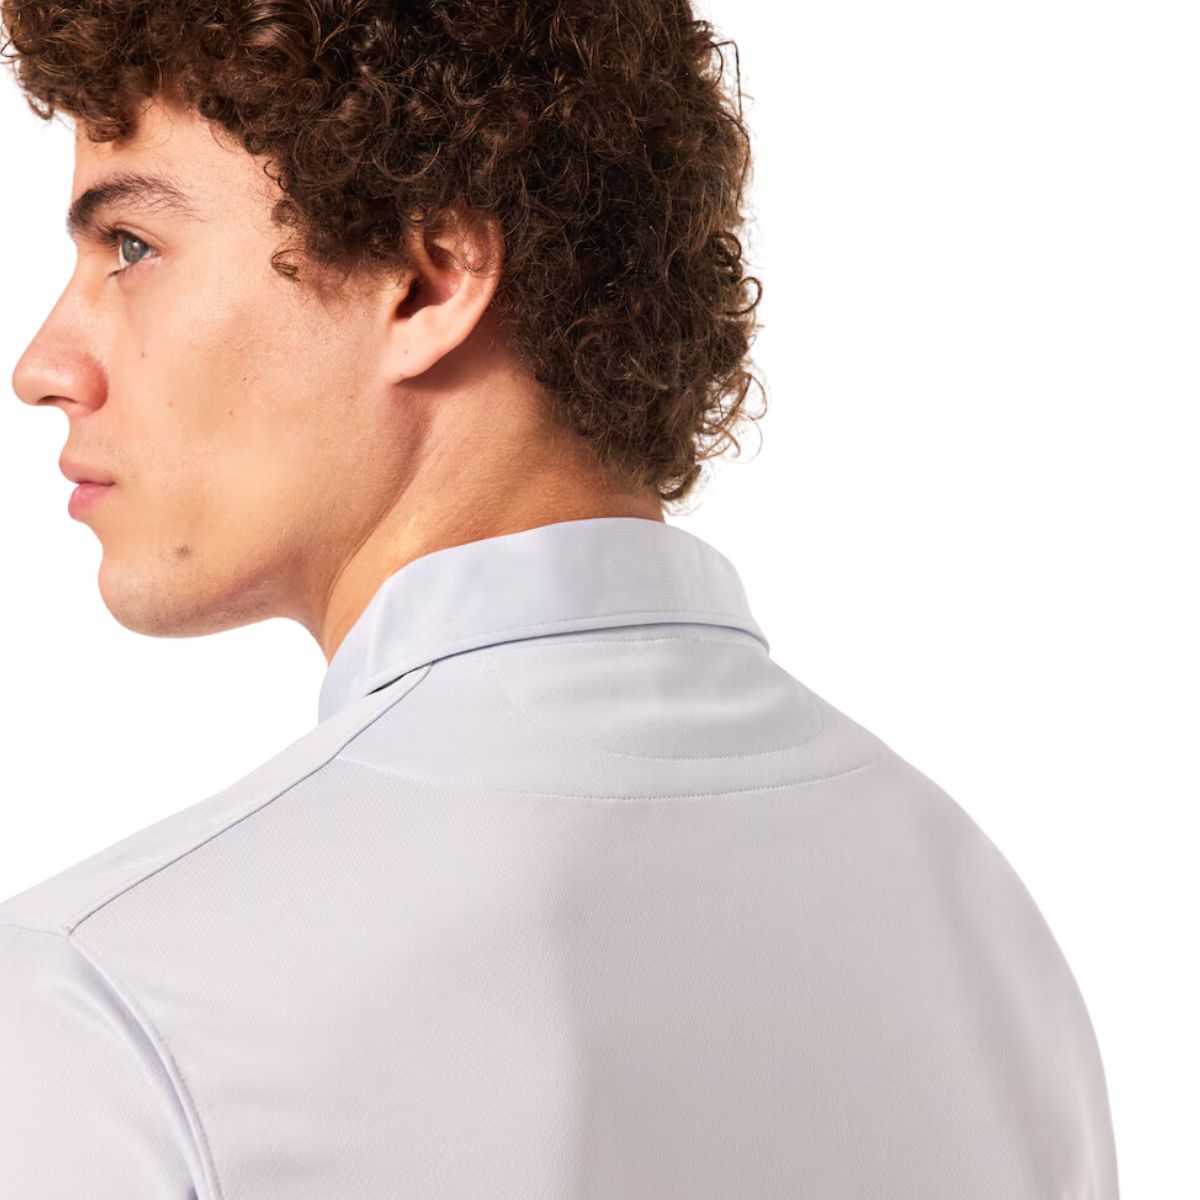 Oakley Icon Tn Protect Rc Polo Shirt